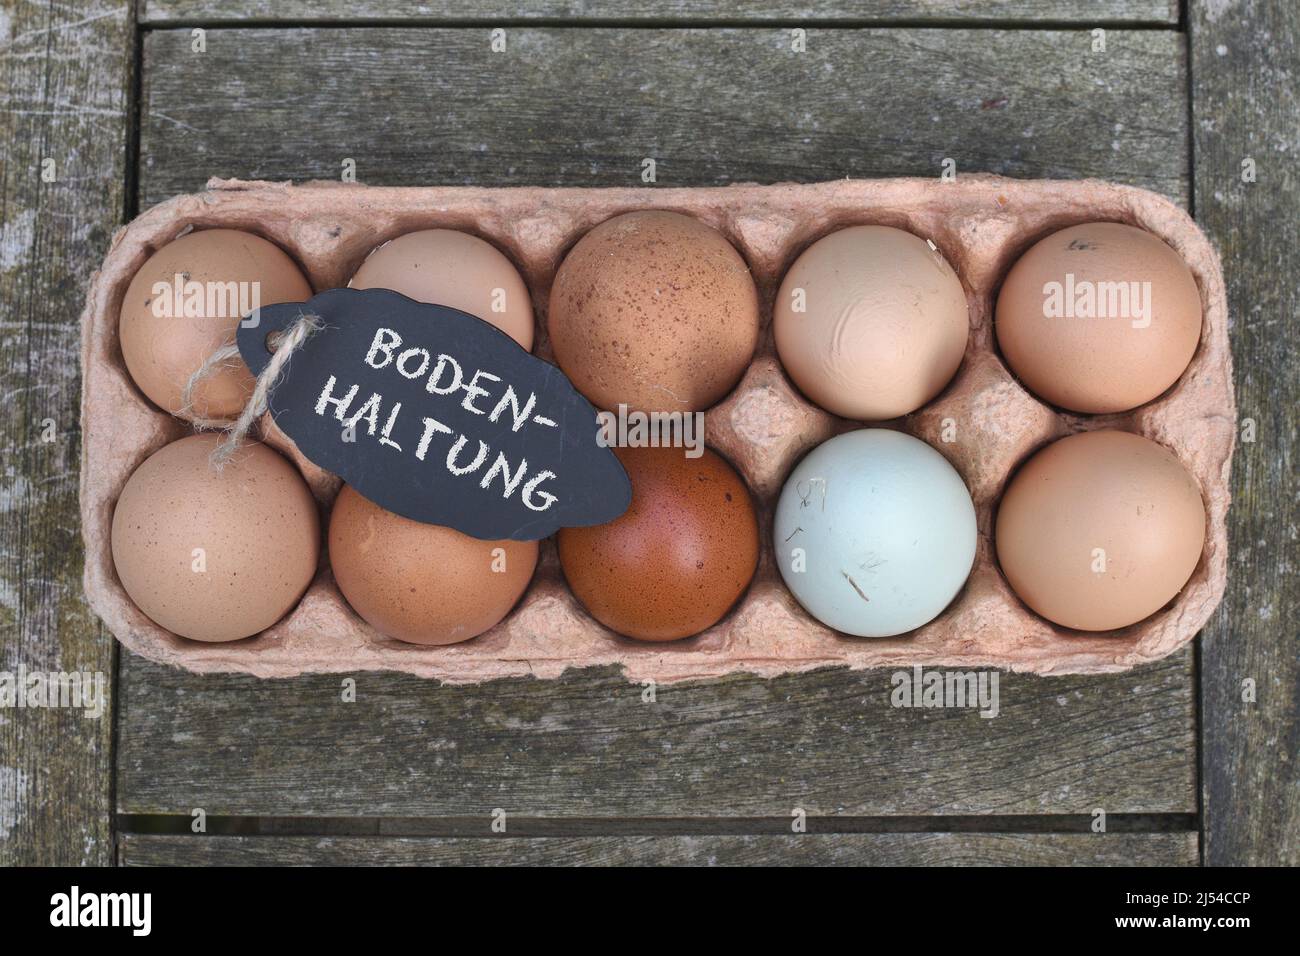 Pizarra con la inscripción 'Bodenhaltung' sobre huevos de pollo en la caja de huevos, Alemania Foto de stock